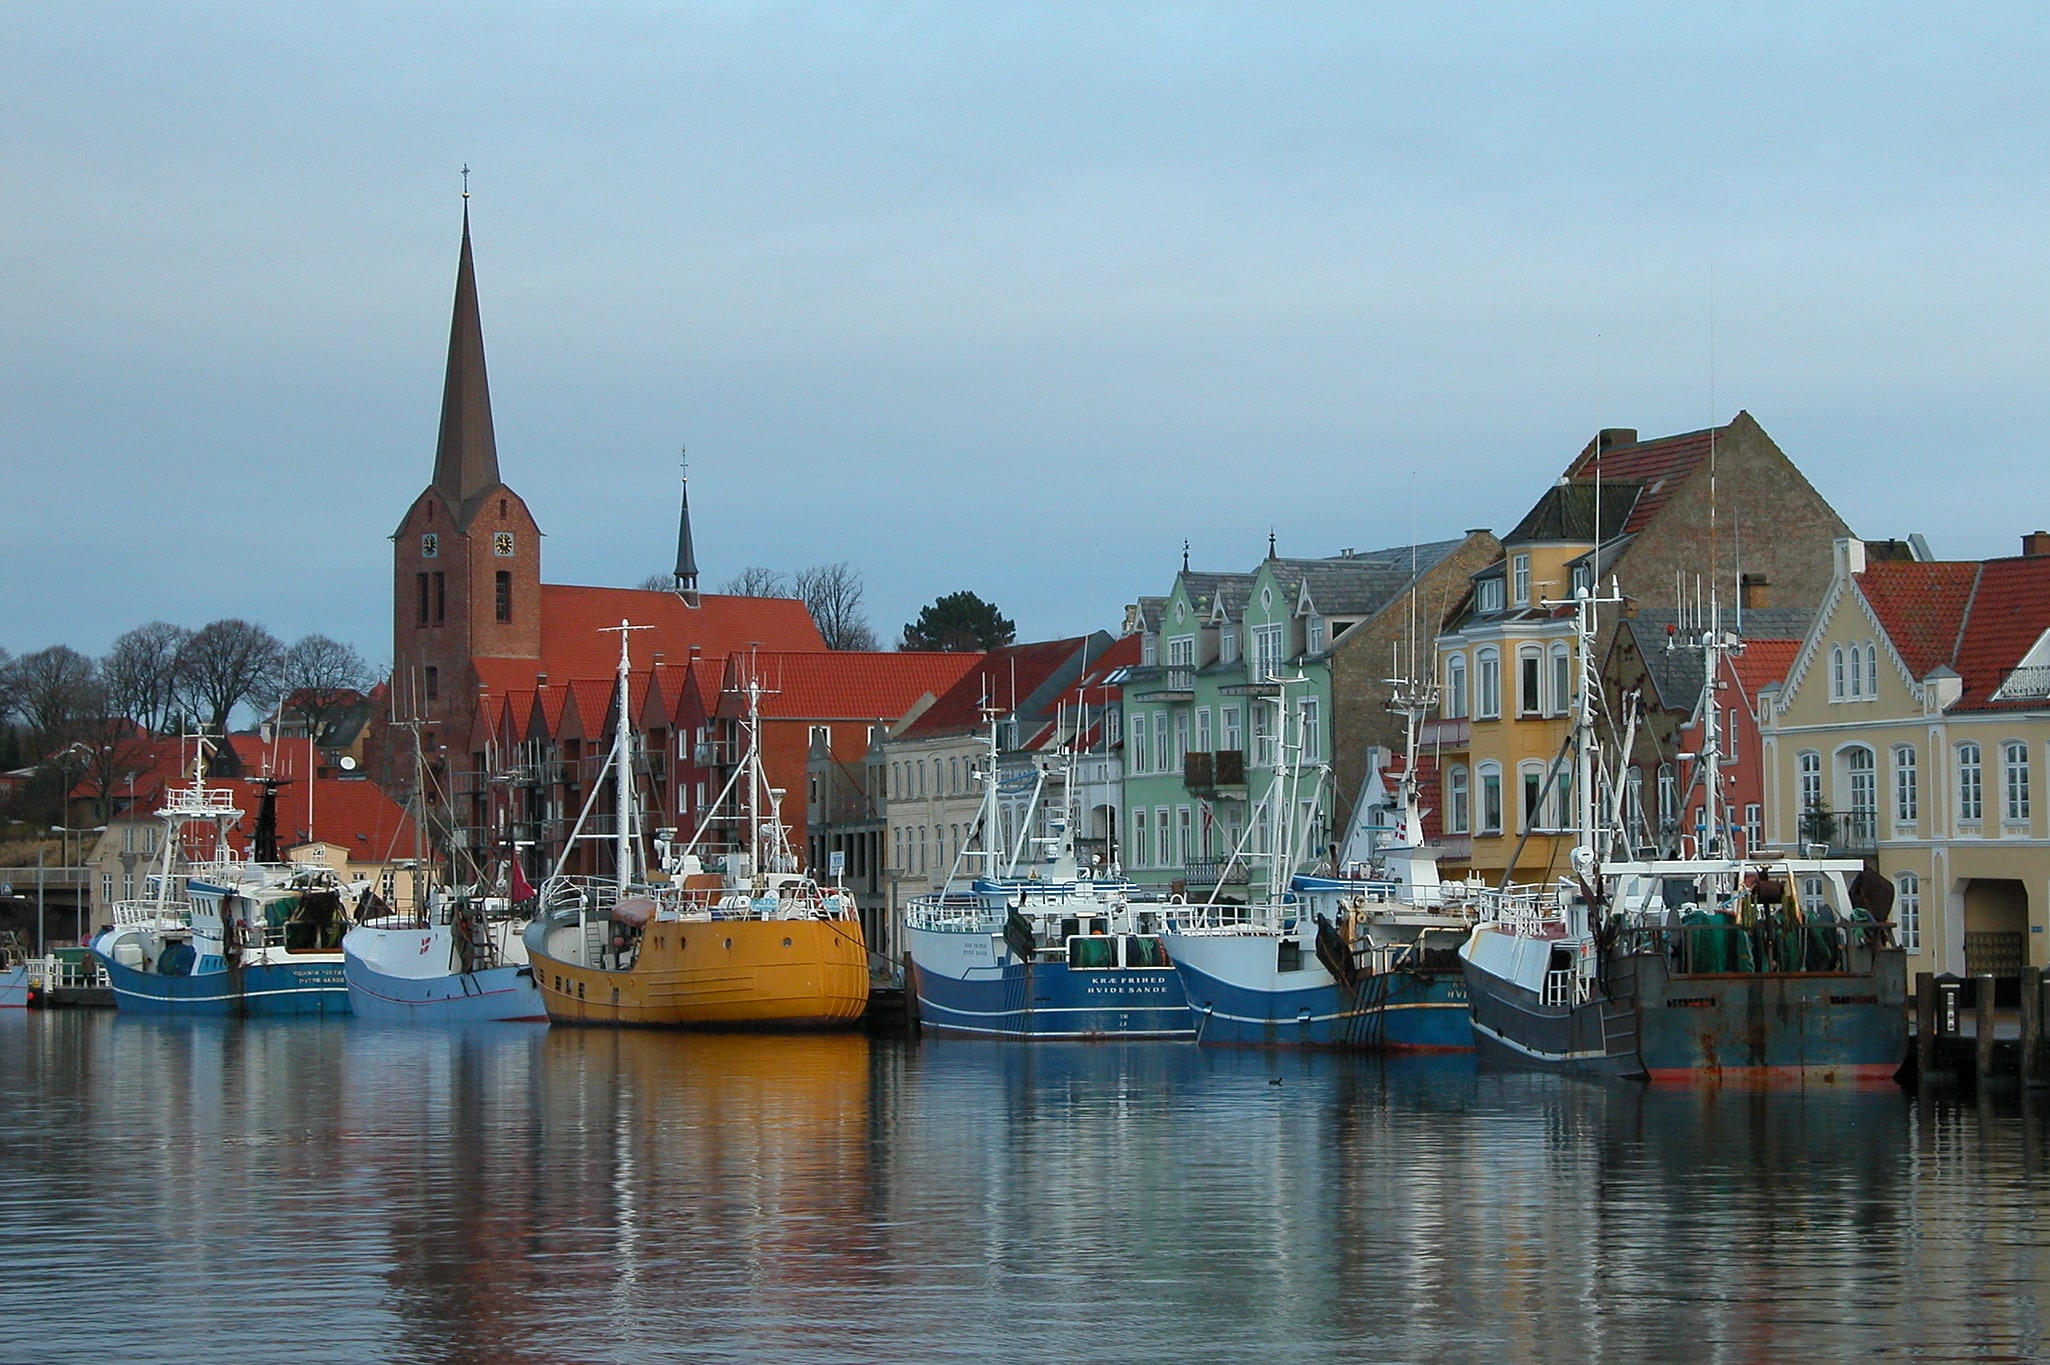 Als Island, Denmark